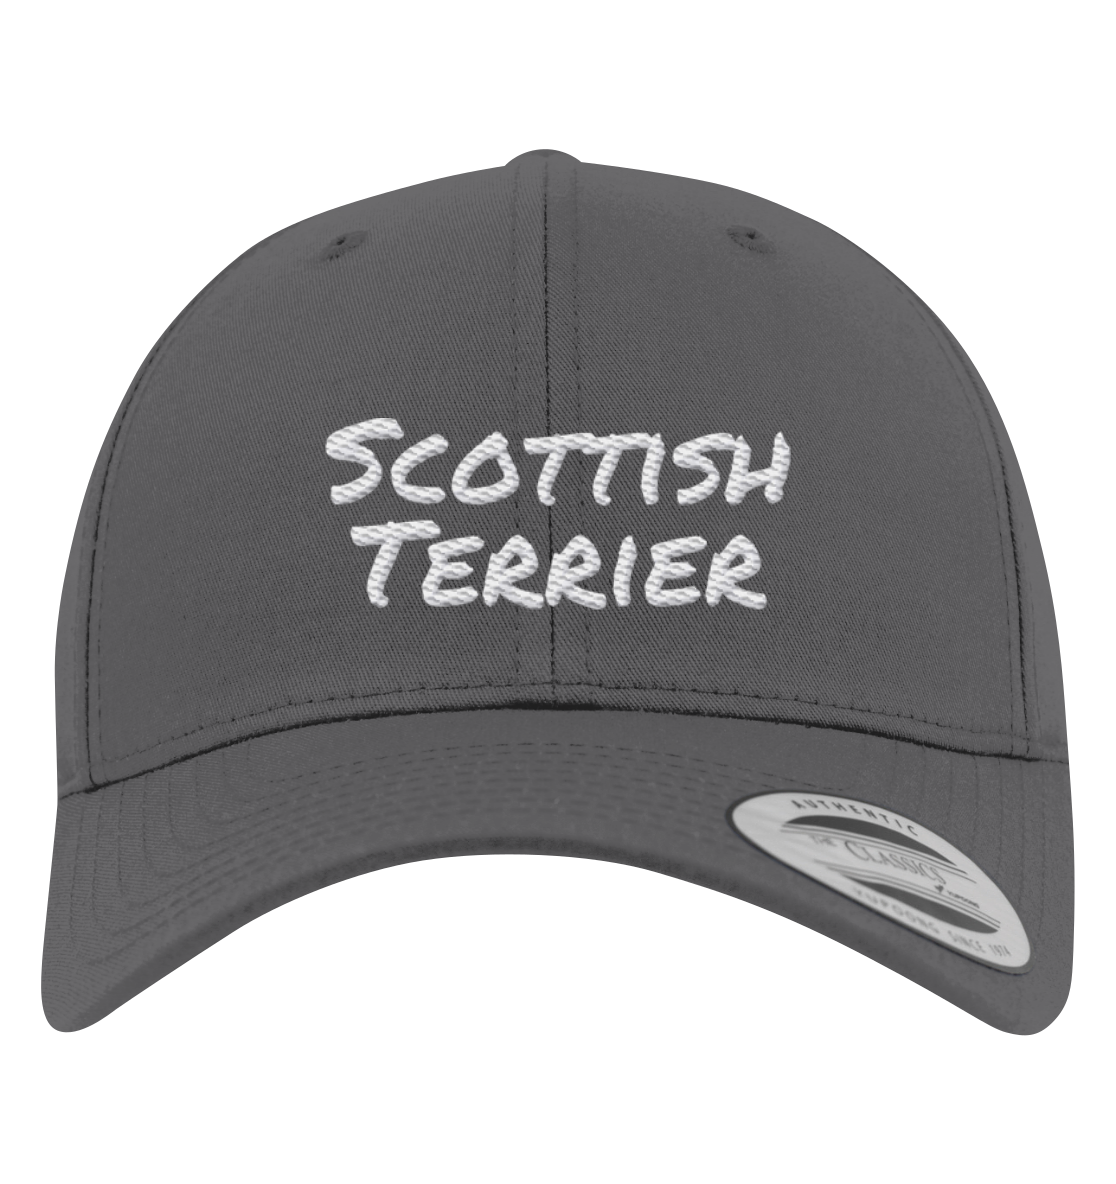 Scottish Terrier - Premium Baseball Cap